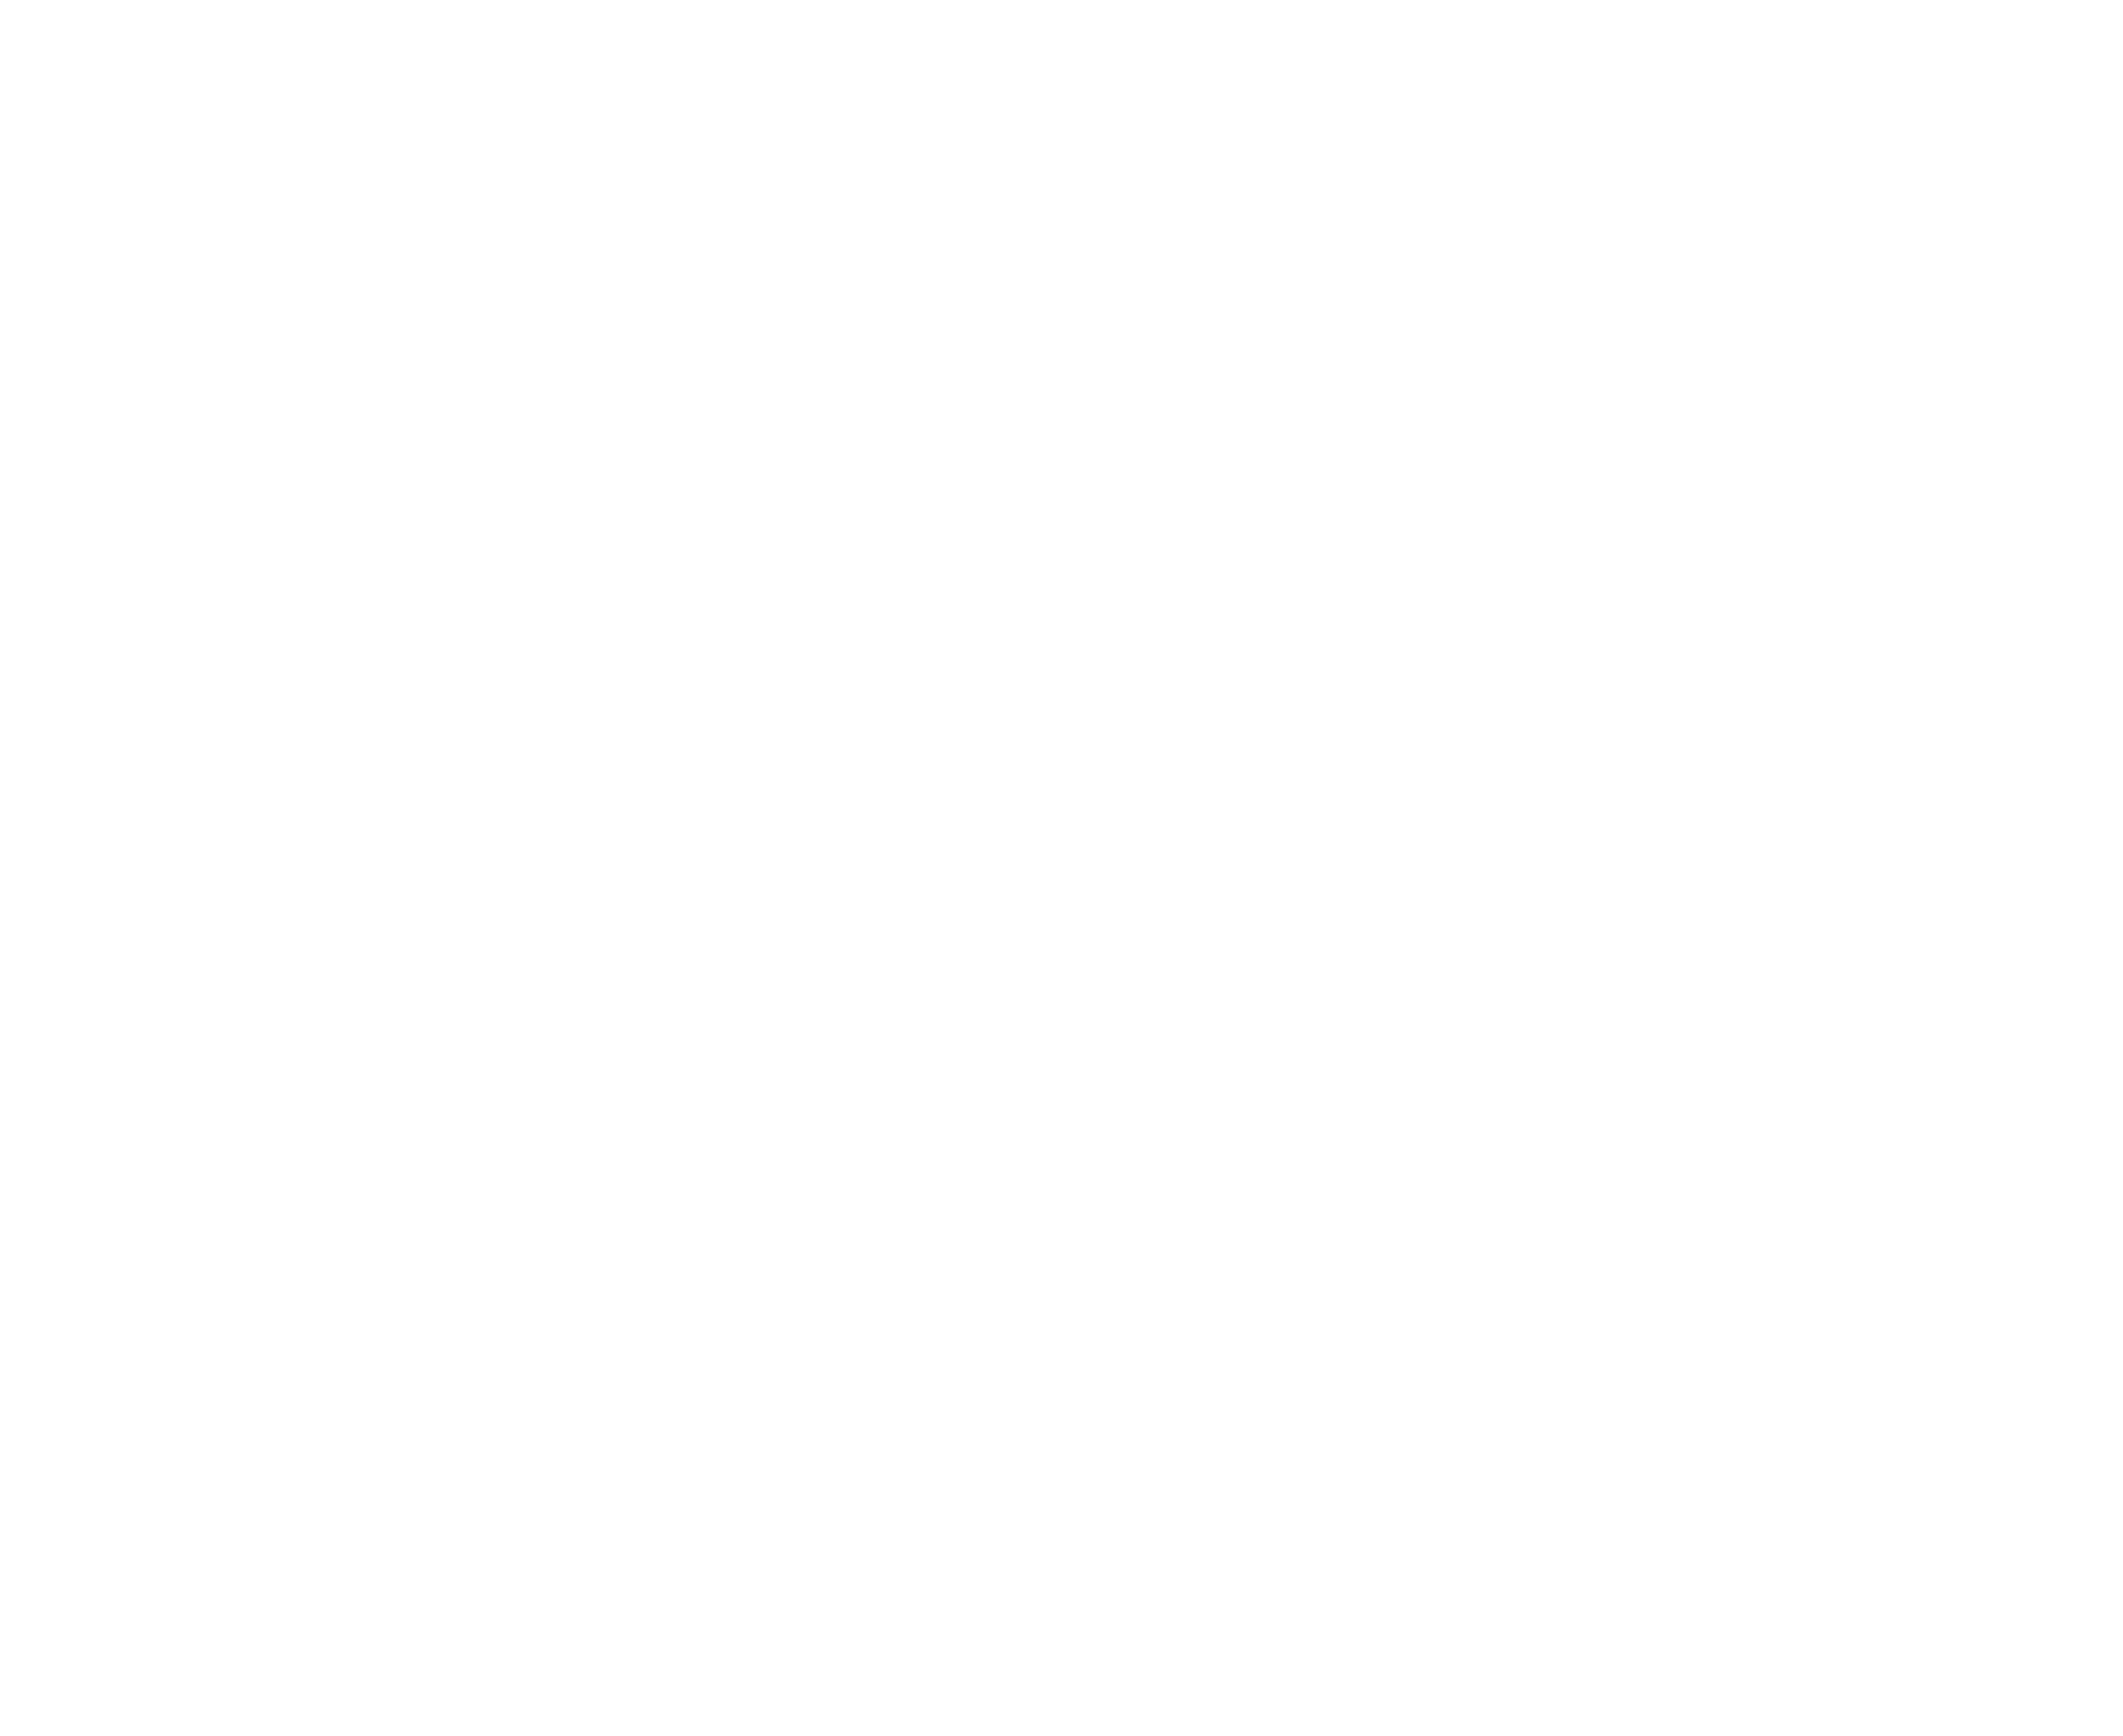 De Fooz